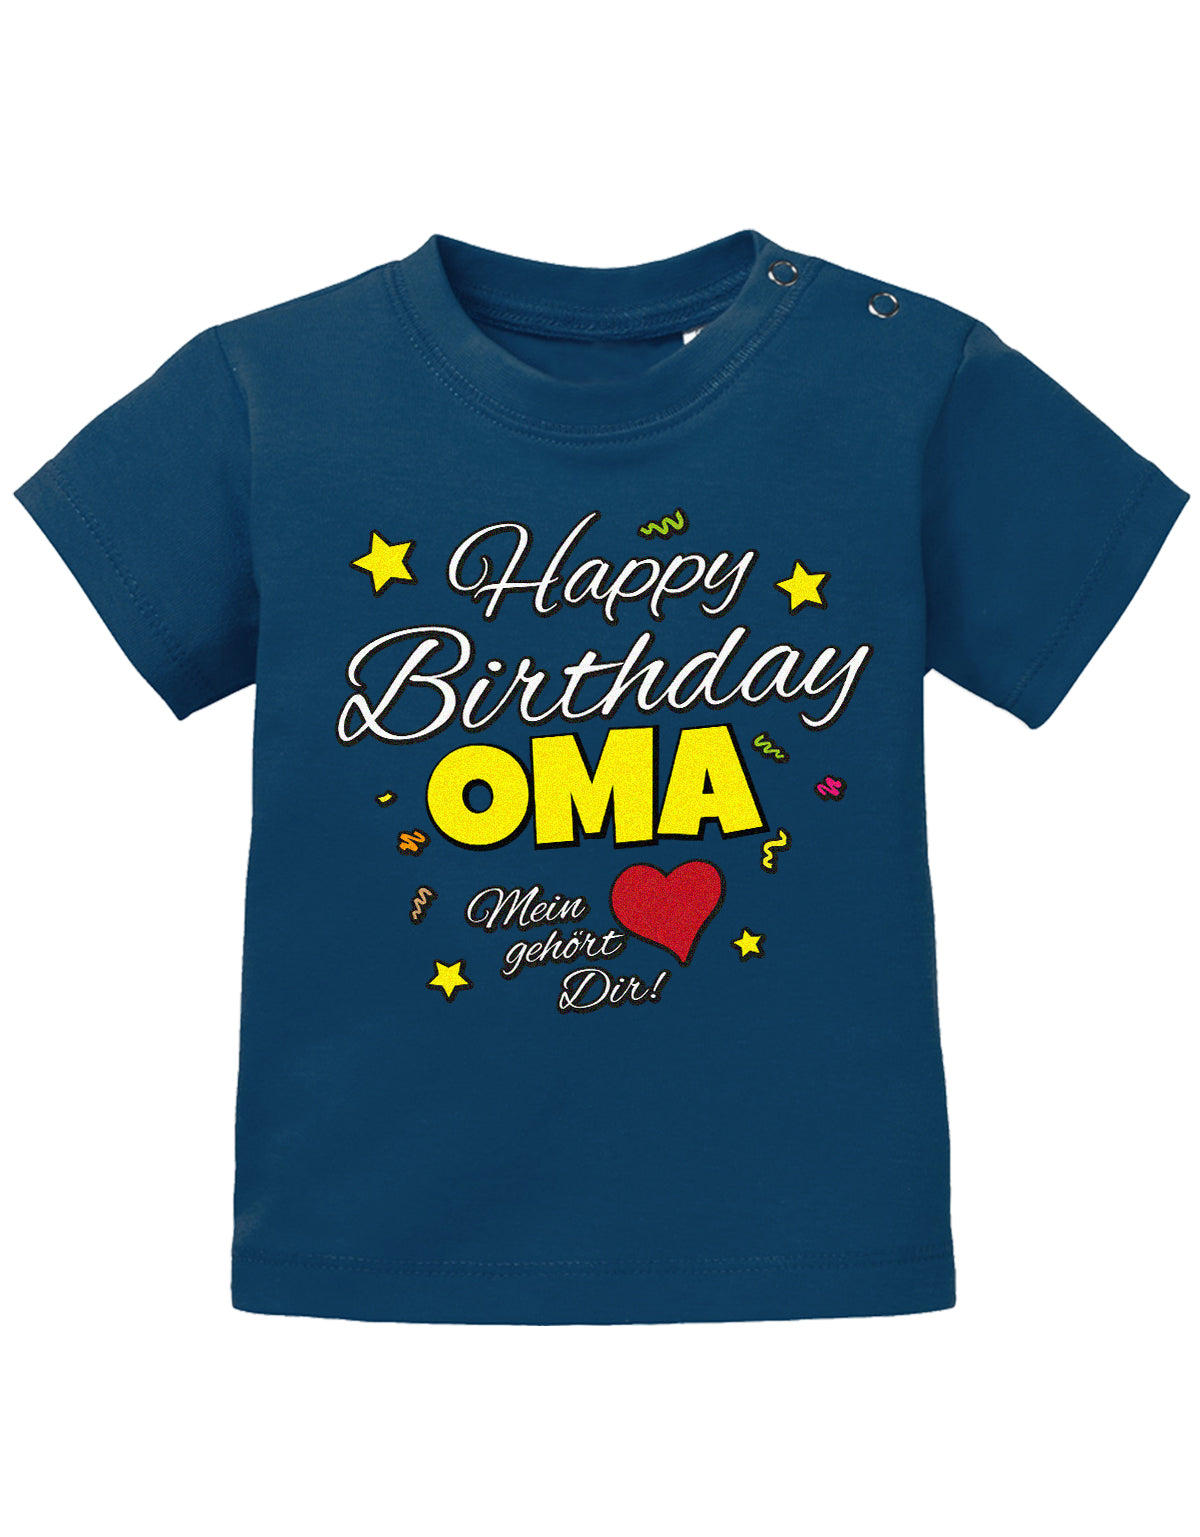 Oma Spruch Baby Shirt. Happy Birthday Oma, Mein Herz gehört dir. Navy